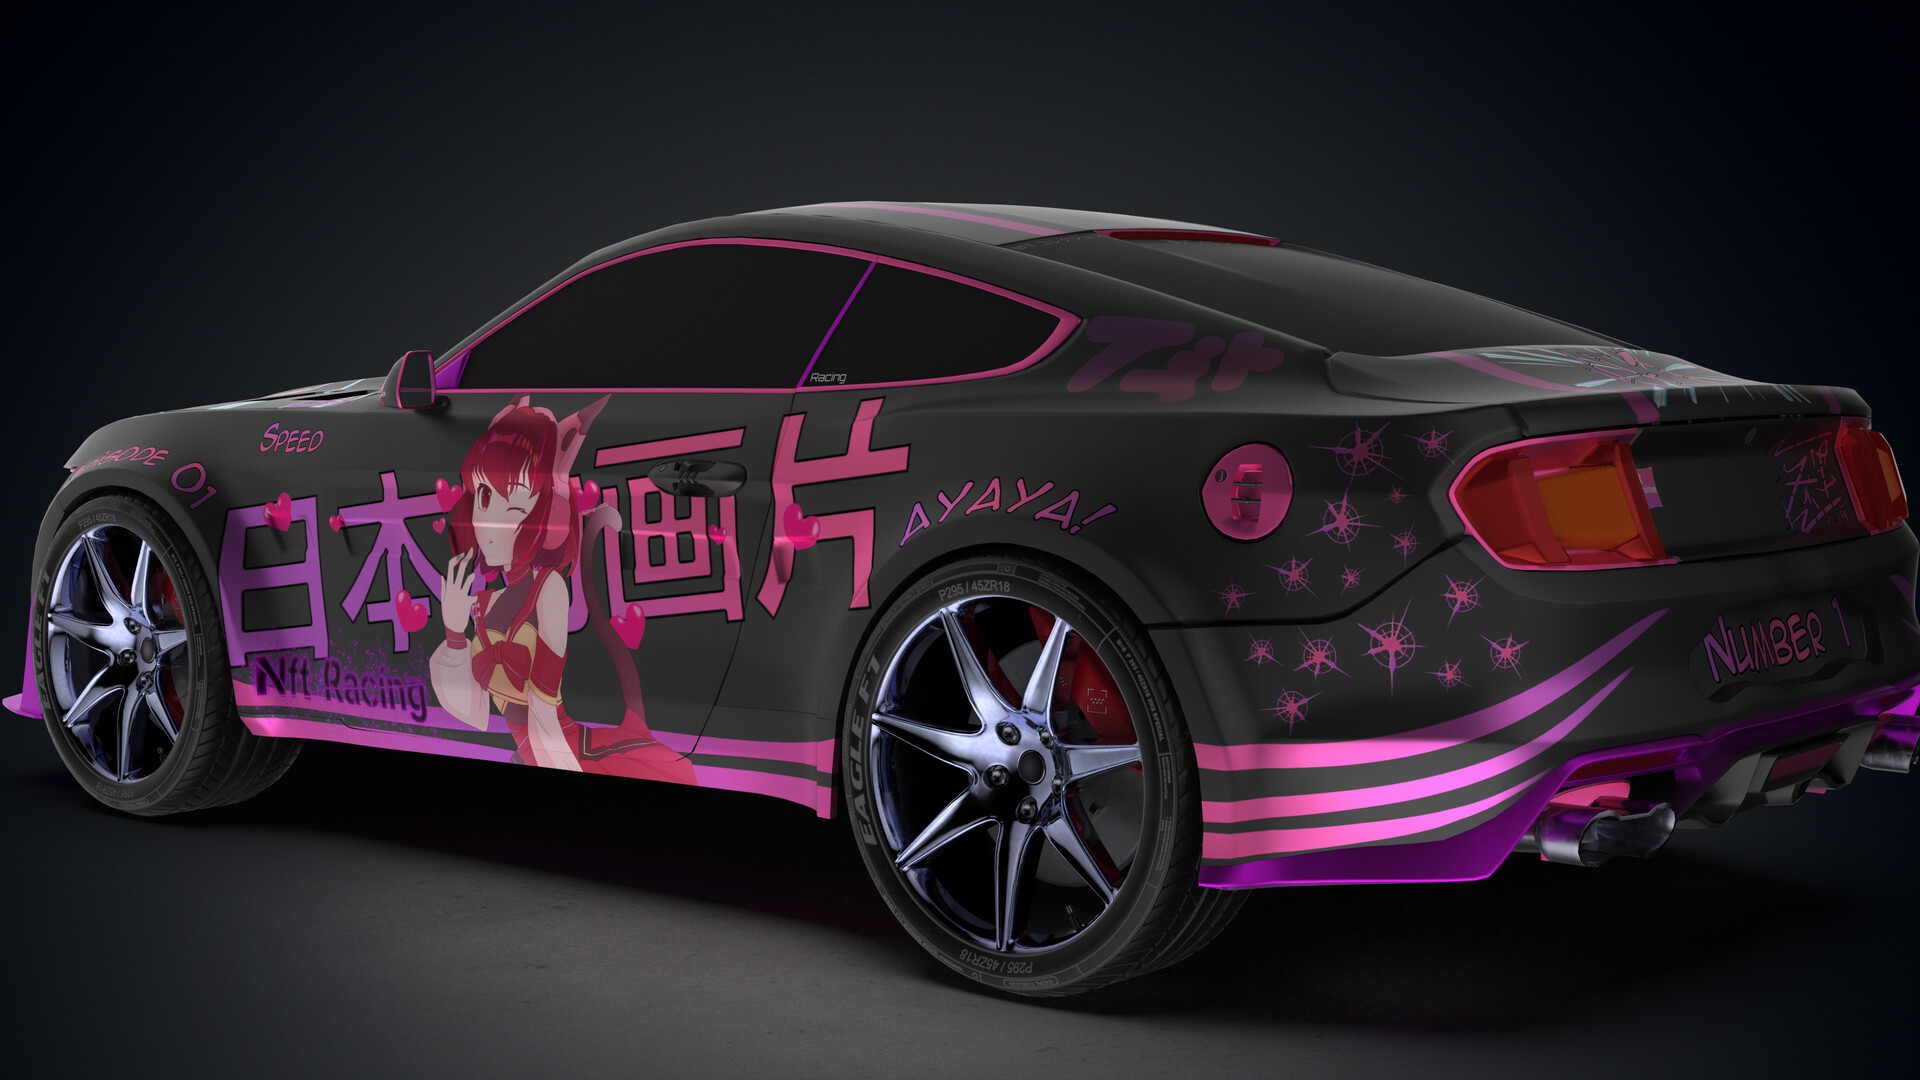 50+] Anime Cars Desktop Wallpapers - WallpaperSafari